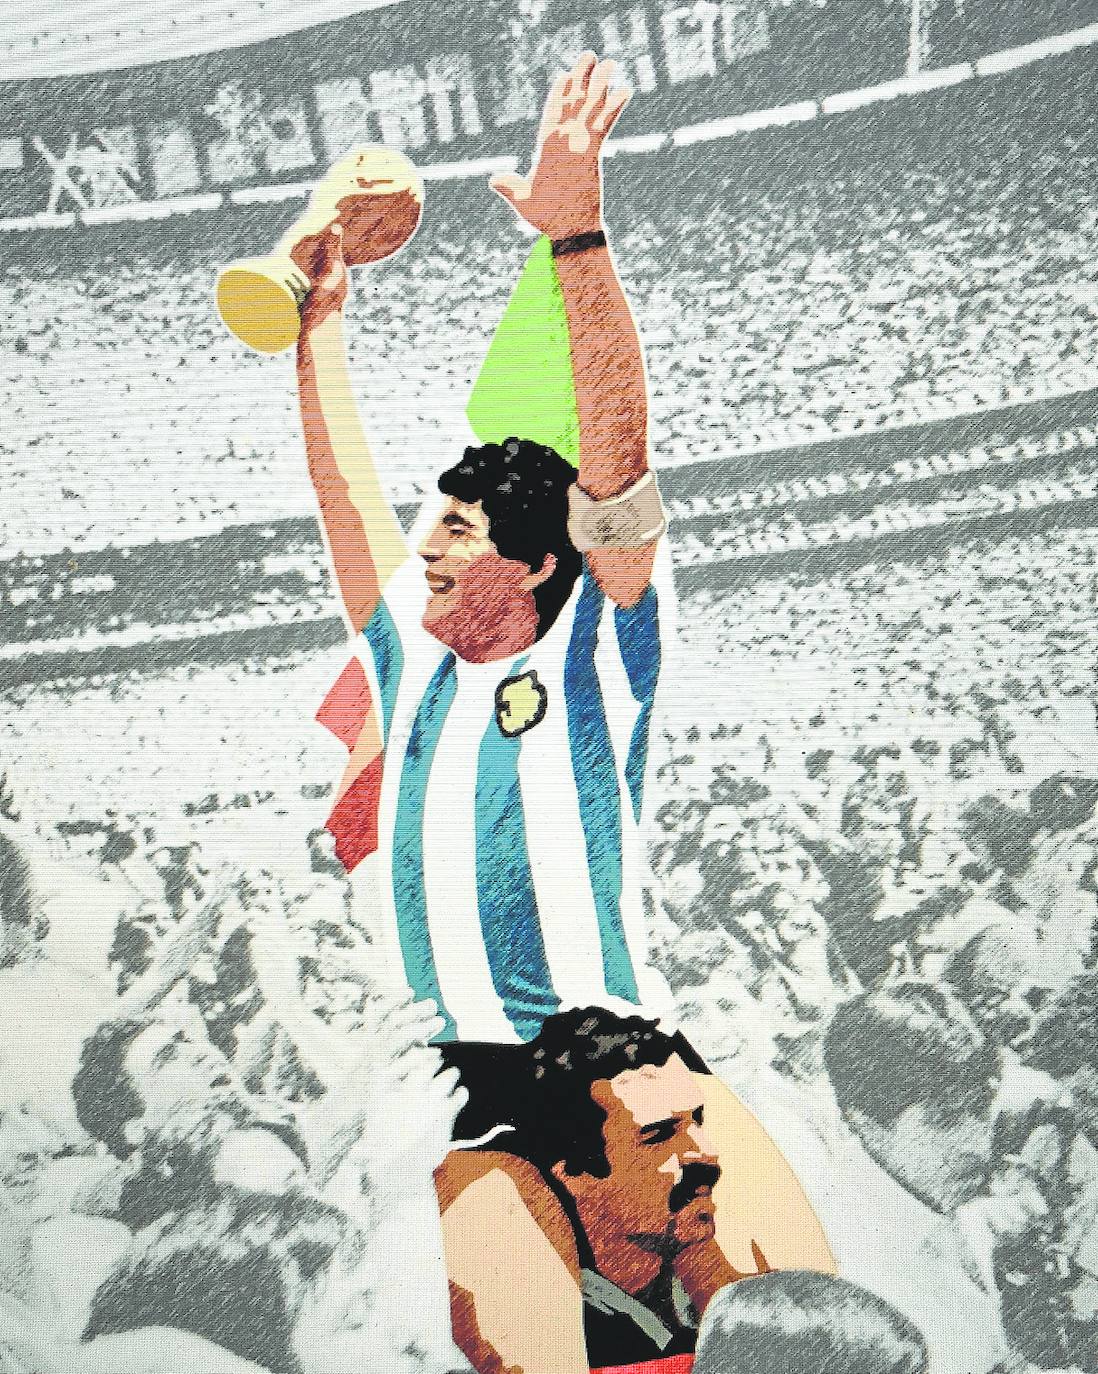 Ilustraciónde Javier Rodríguez Fajardo del histórico momento de Maradona en México '86 y a hombros de Cejas./